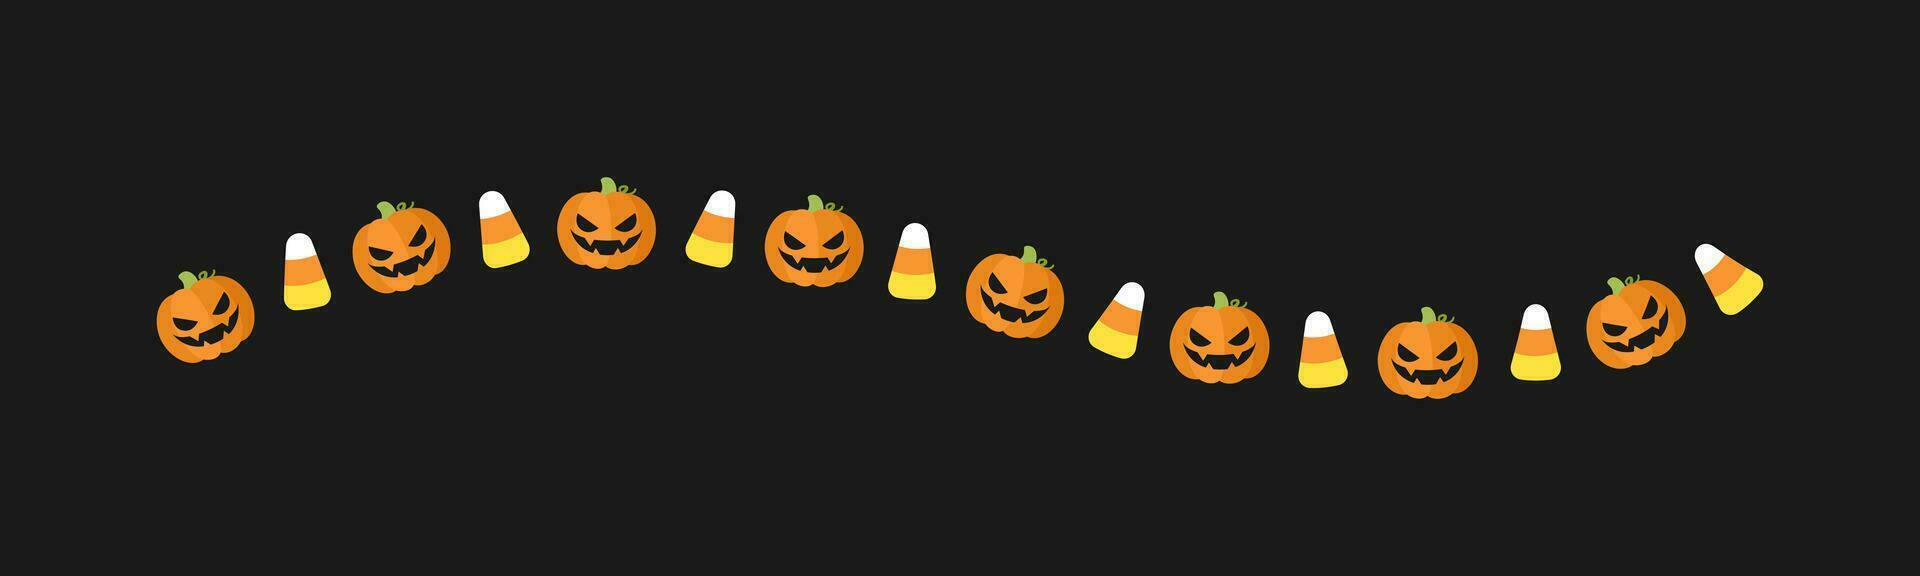 scheidingsteken grens illustratie lijn van schattig jack O lantaarns, snoep maïs, truc of traktatie patroon voor halloween dag concept van herfst seizoen vector